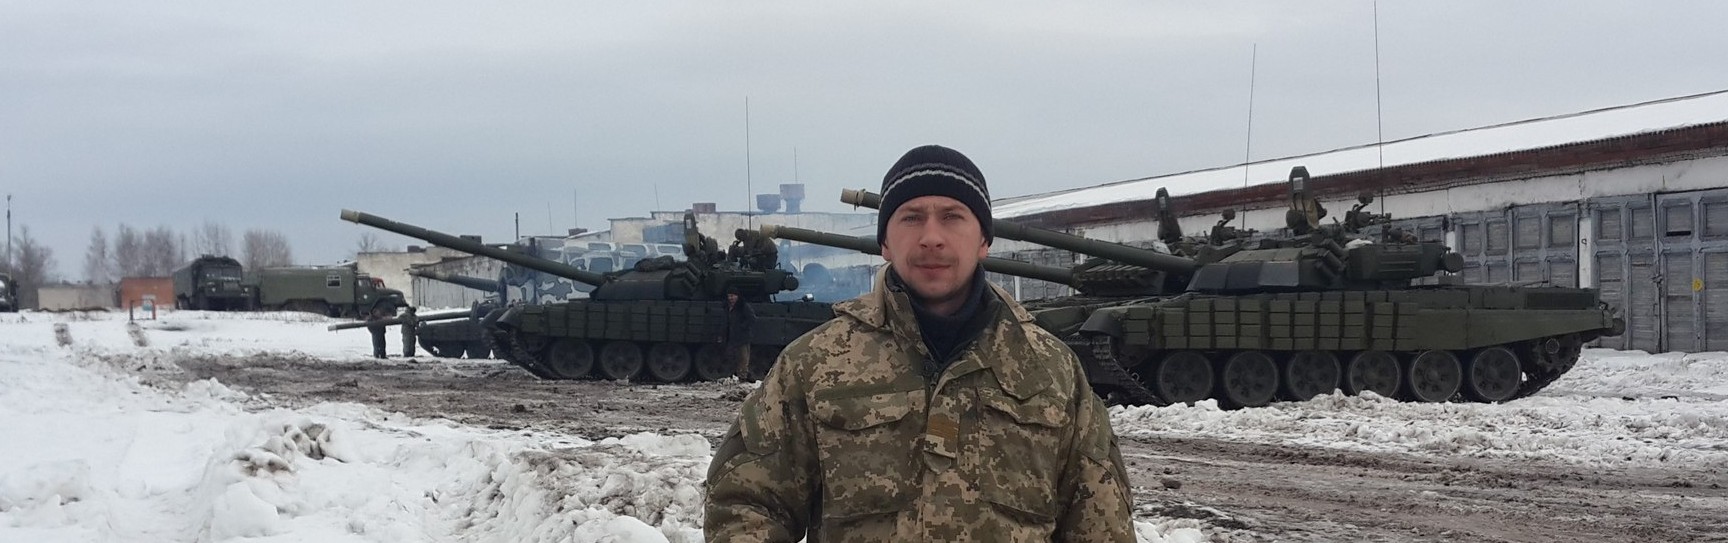 Украинские танки Т-72УА-1 в Чугуево, фотография января 2015 г